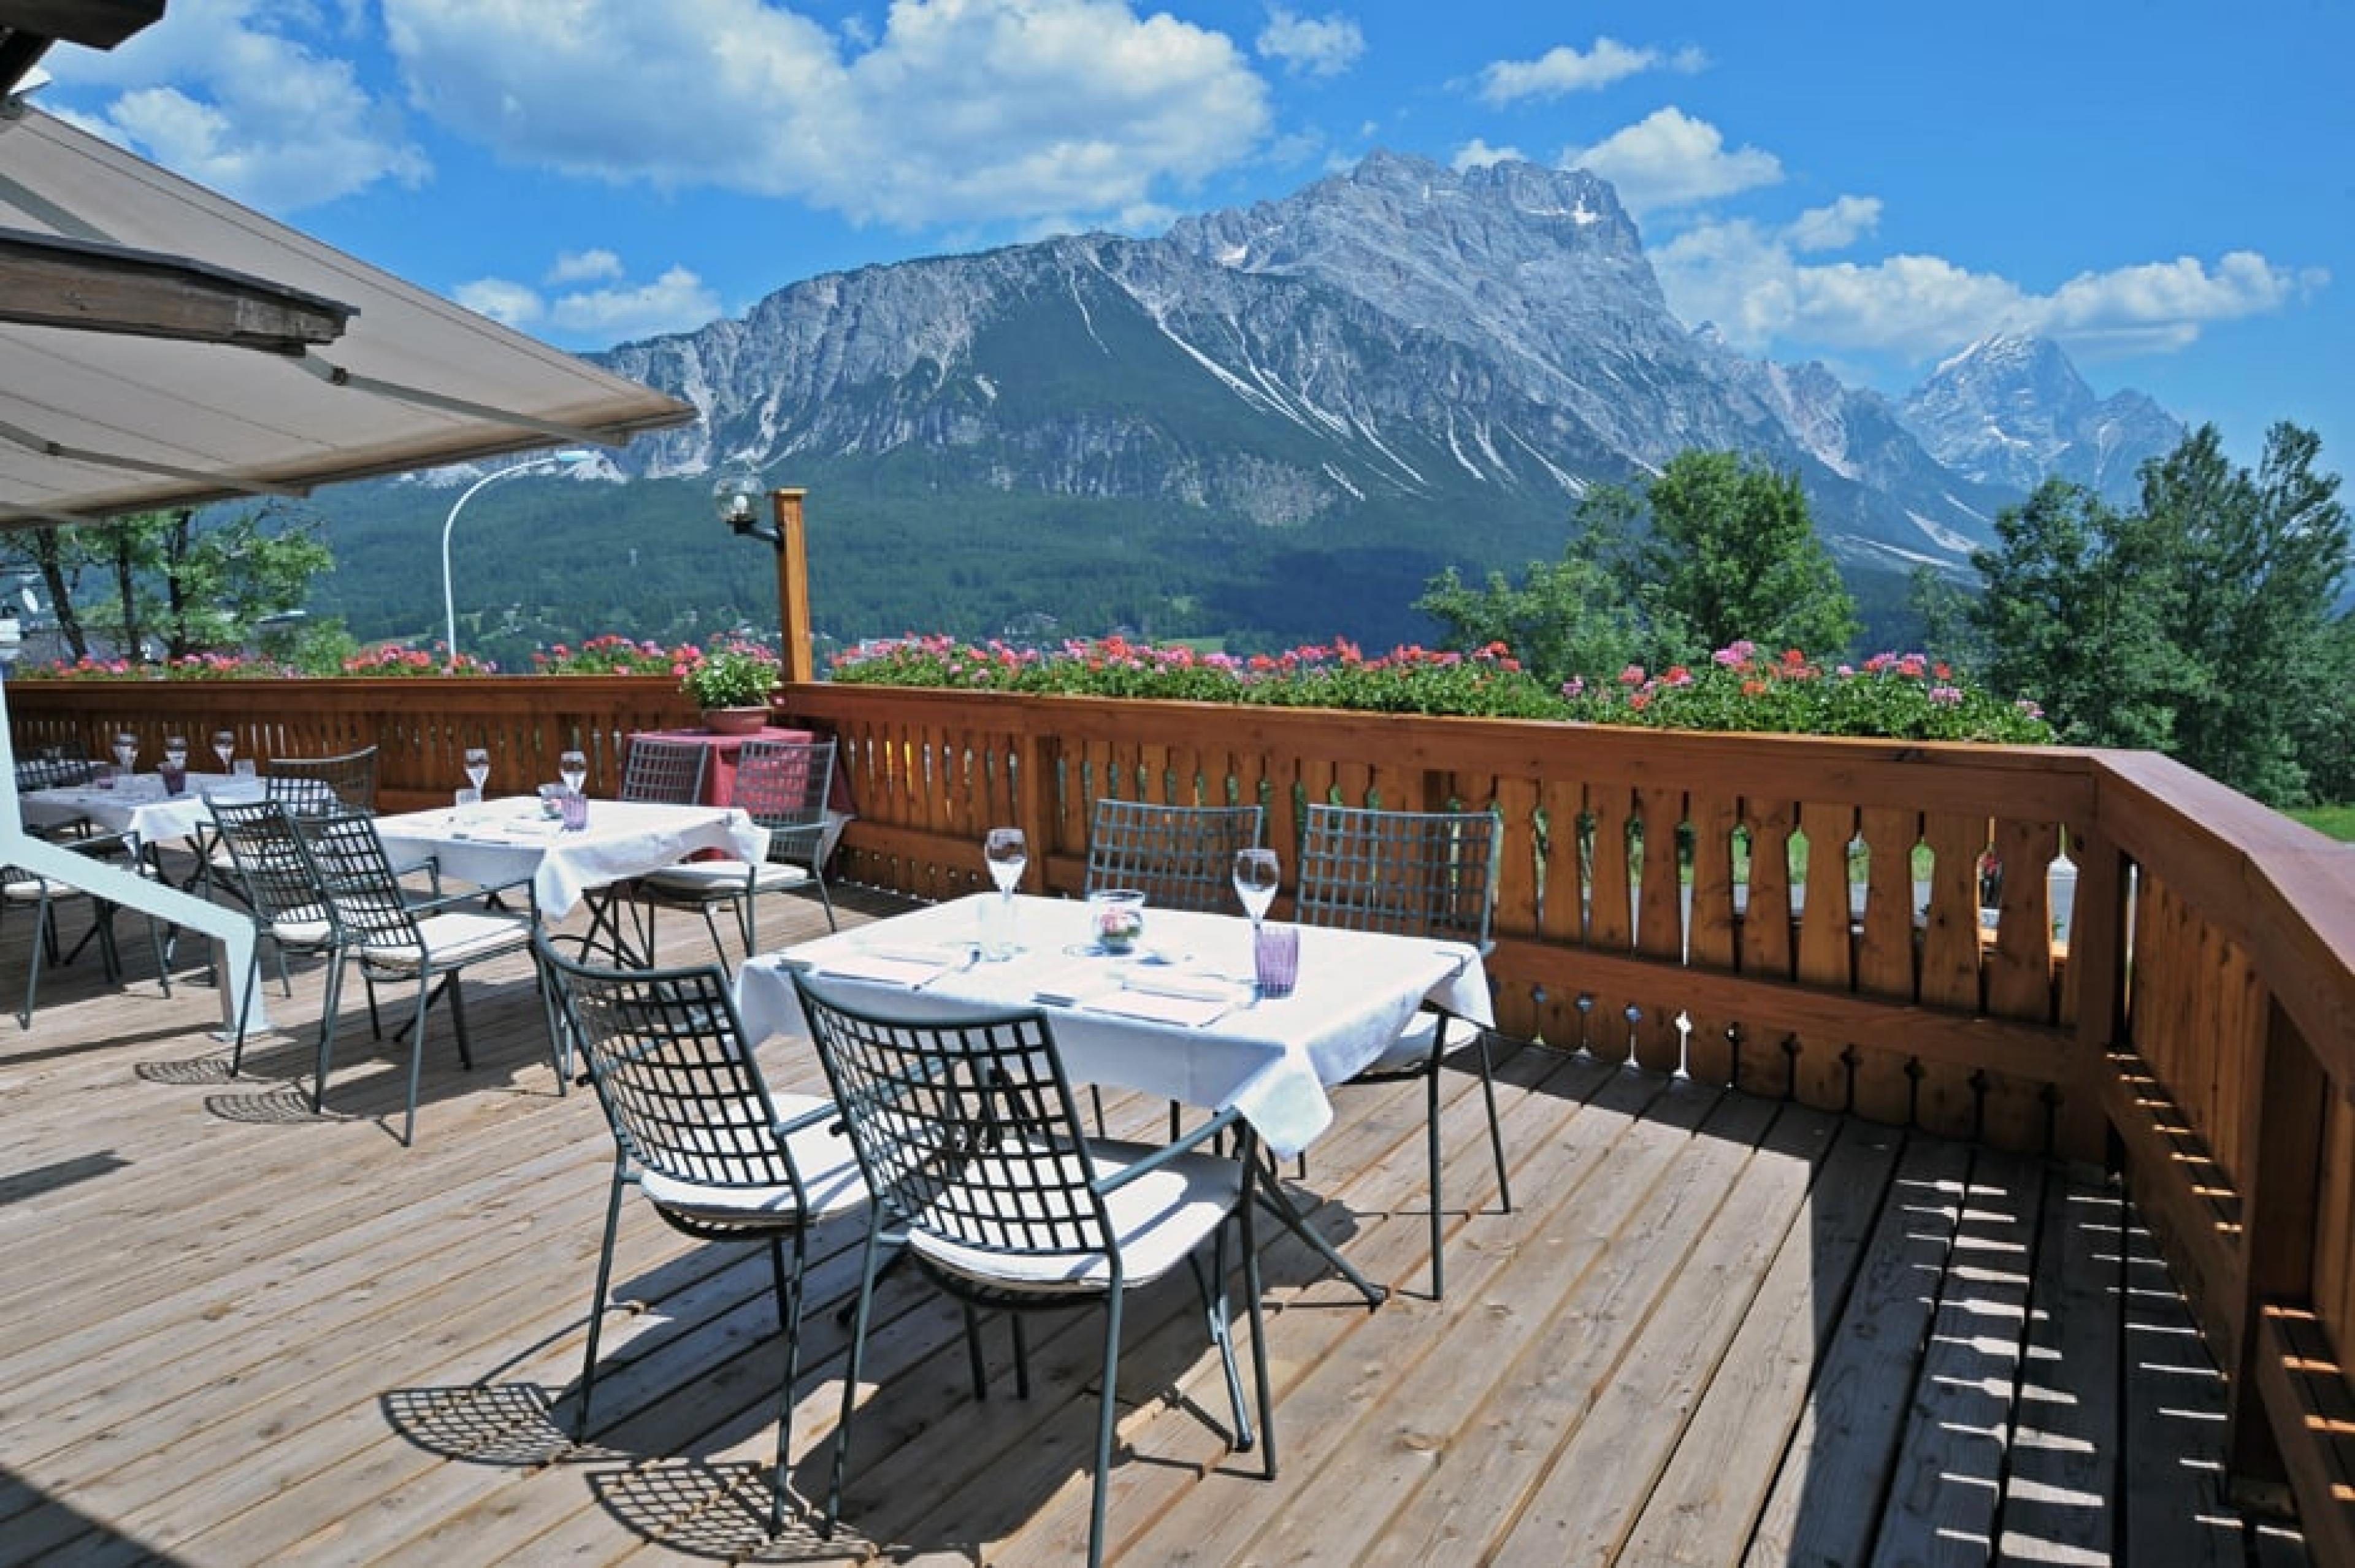 Terrace Dining at Tivoli, Dolomites, Italy - Courtesy Zoom Foto